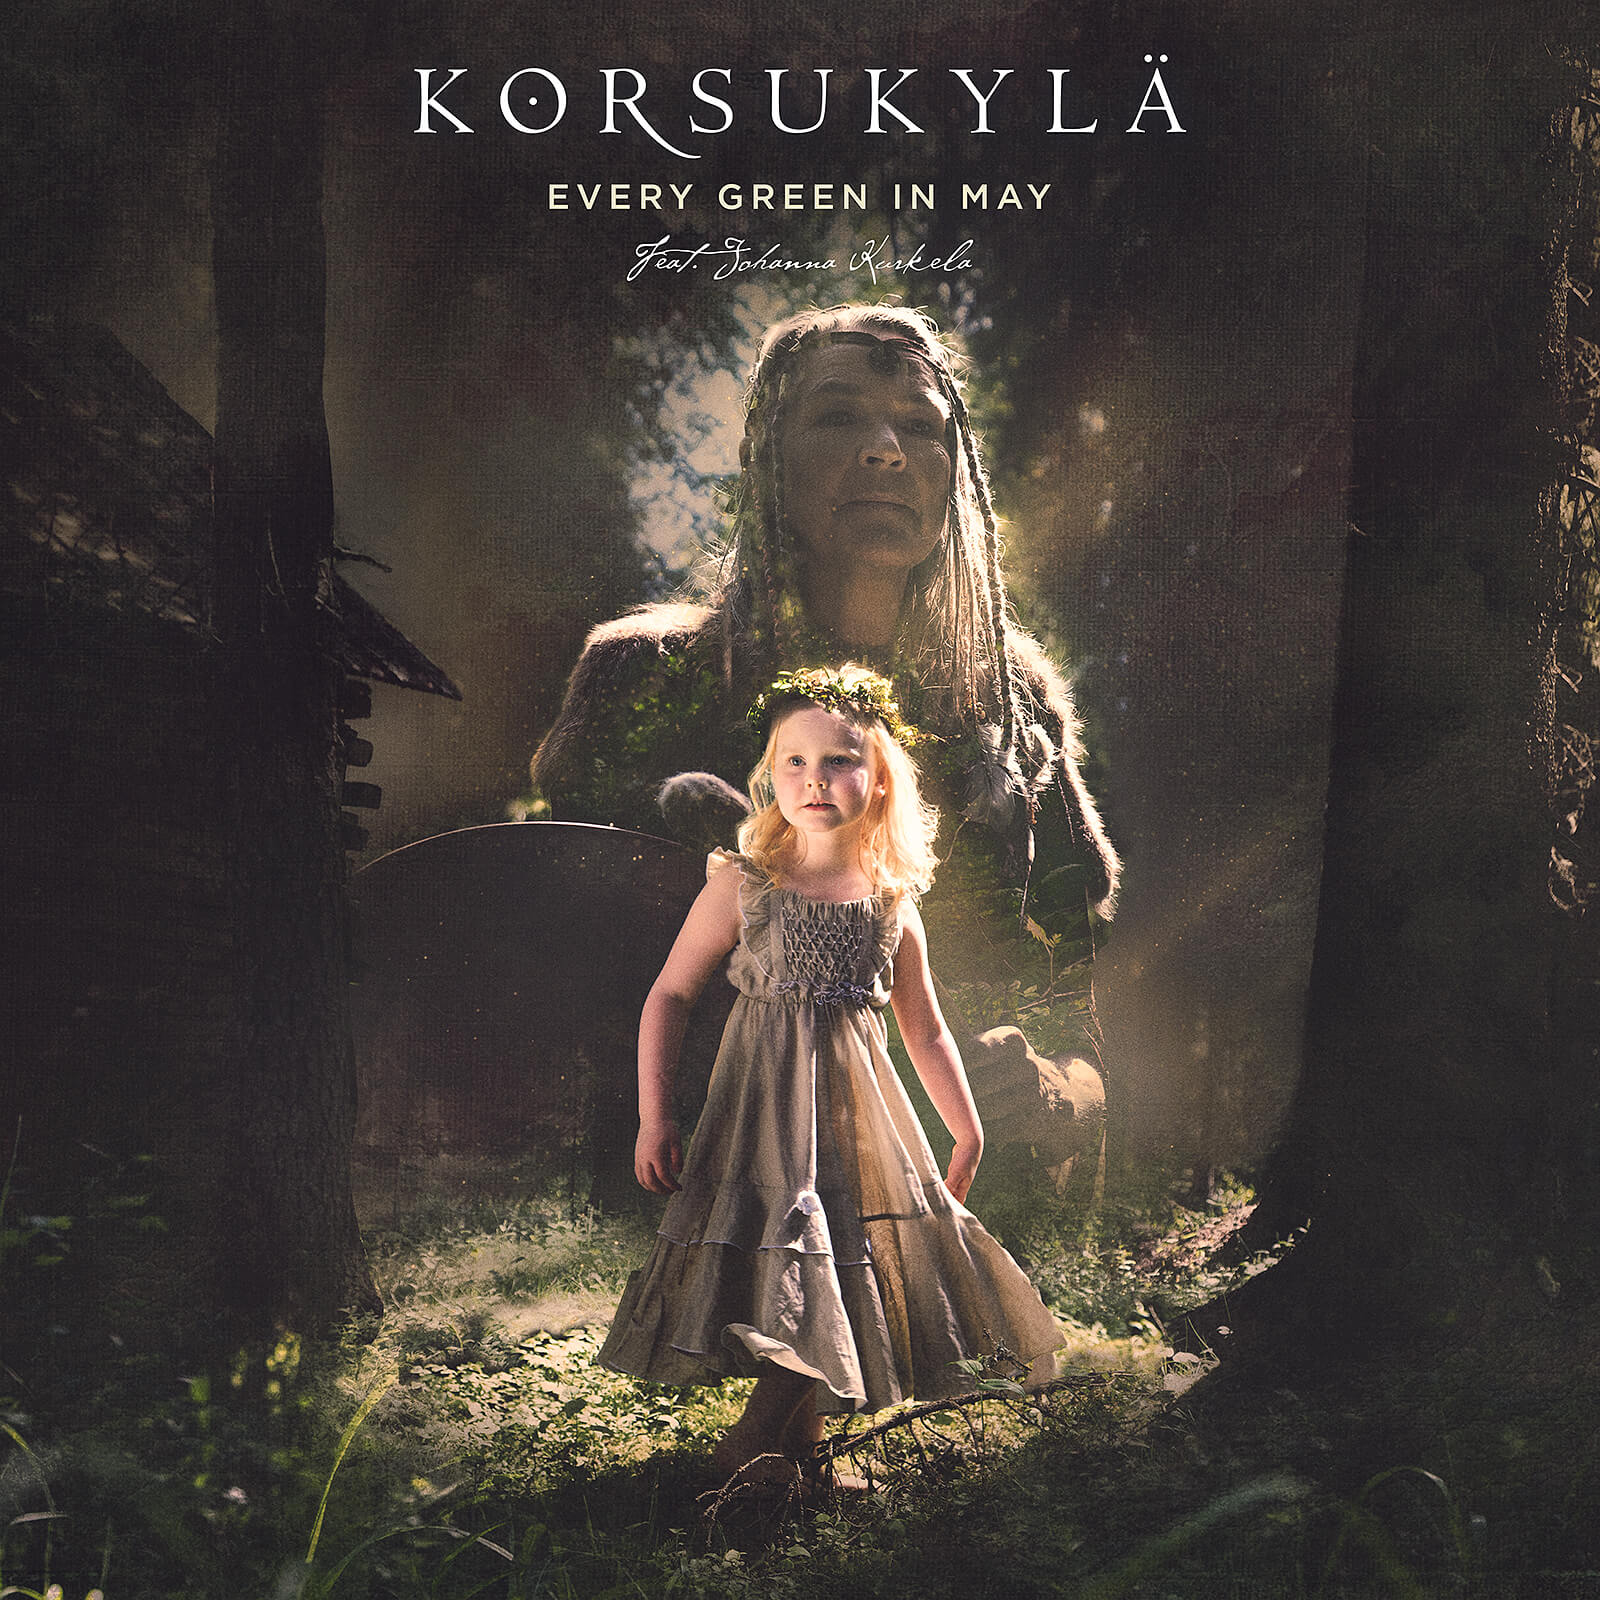 Korsukylä feat. Johanna Kurkela – Every Green in May